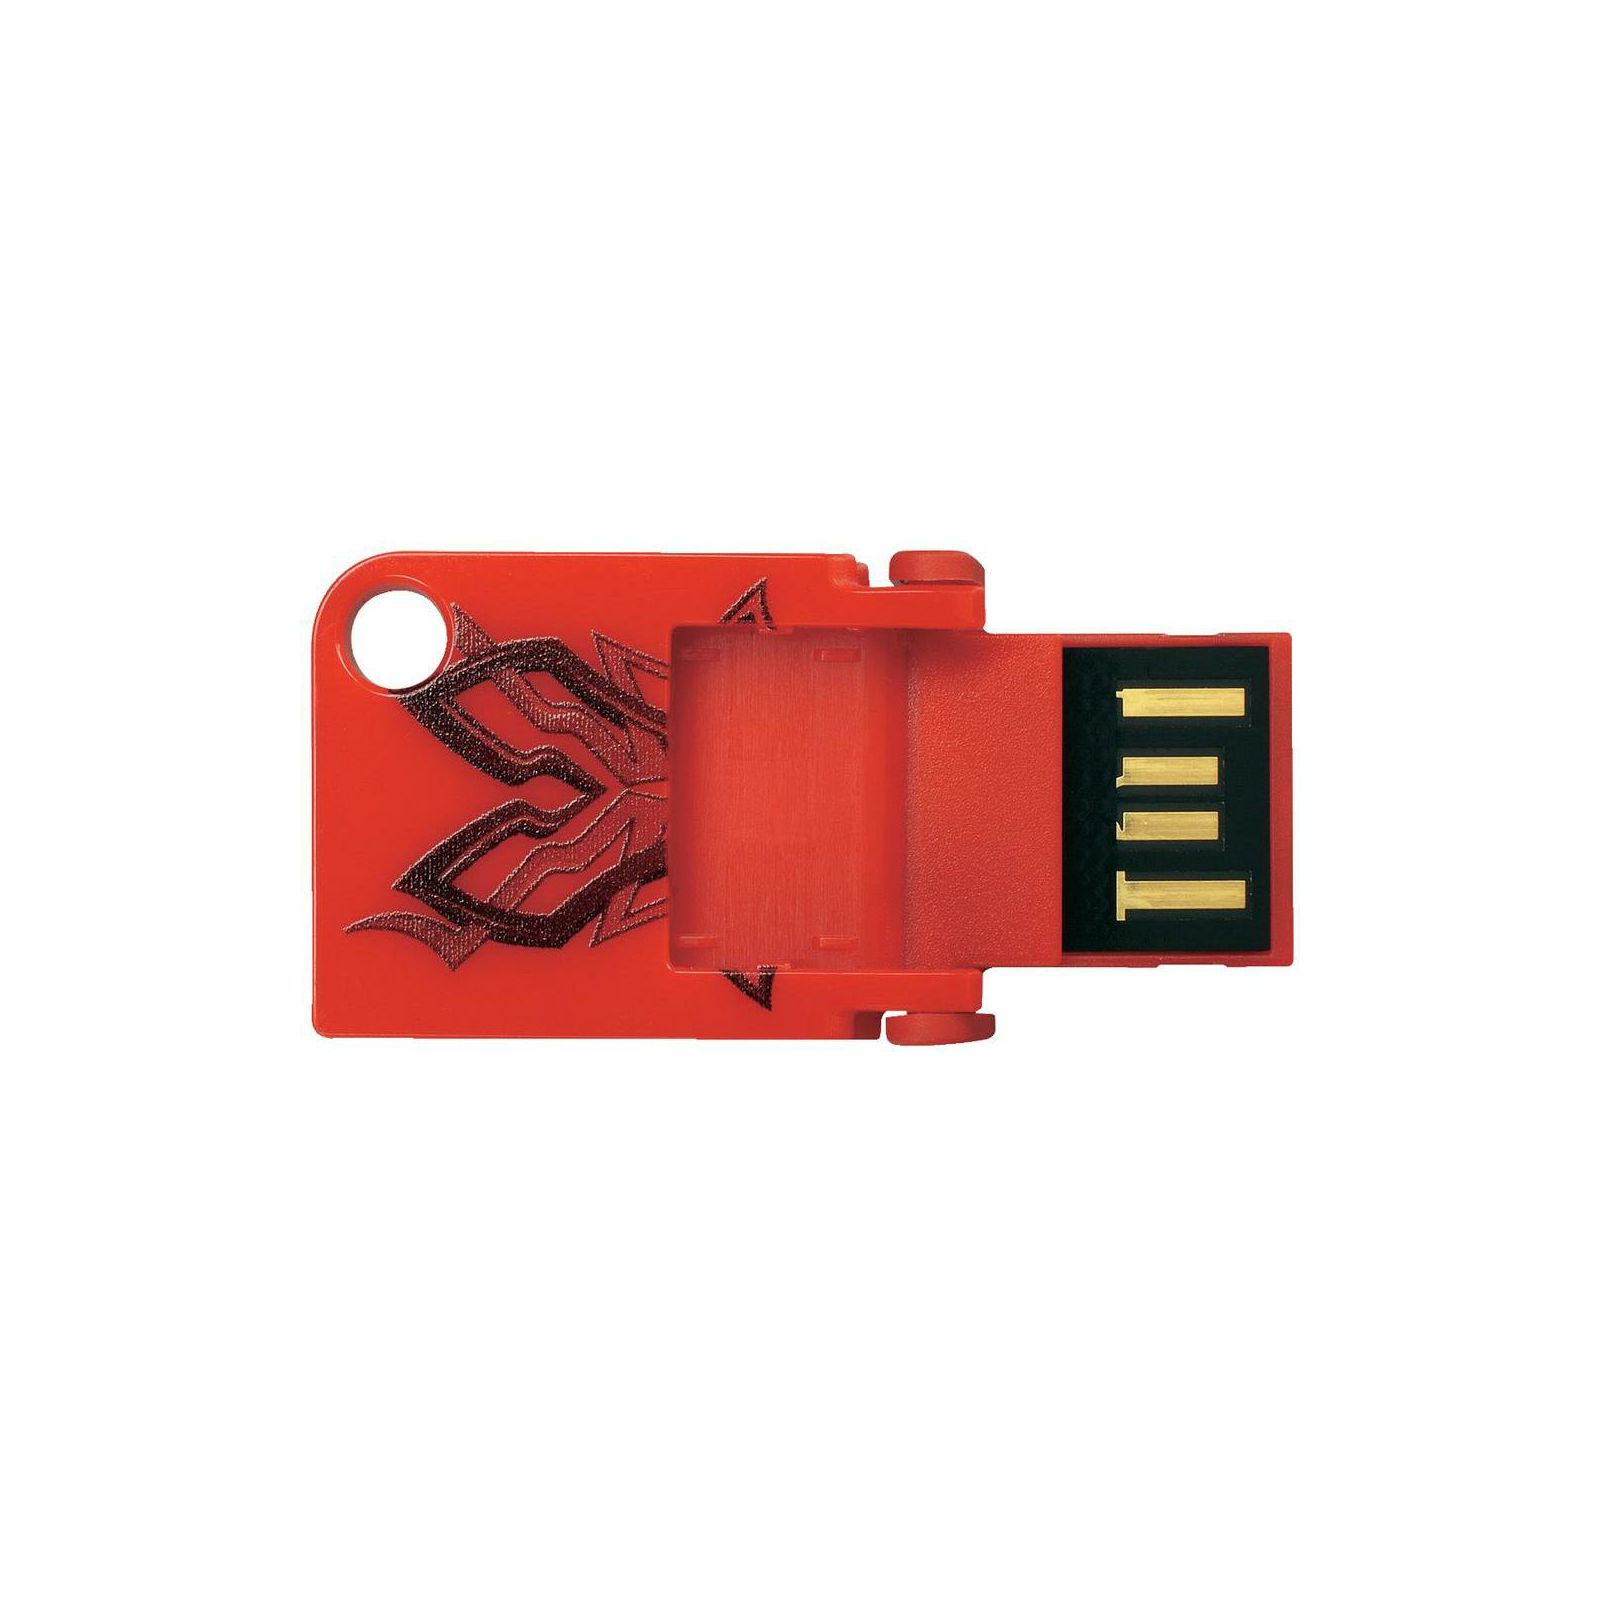 SanDisk Cruzer Pop 8GB Tribal SDCZ53B-008G-B35 USB Memory Stick